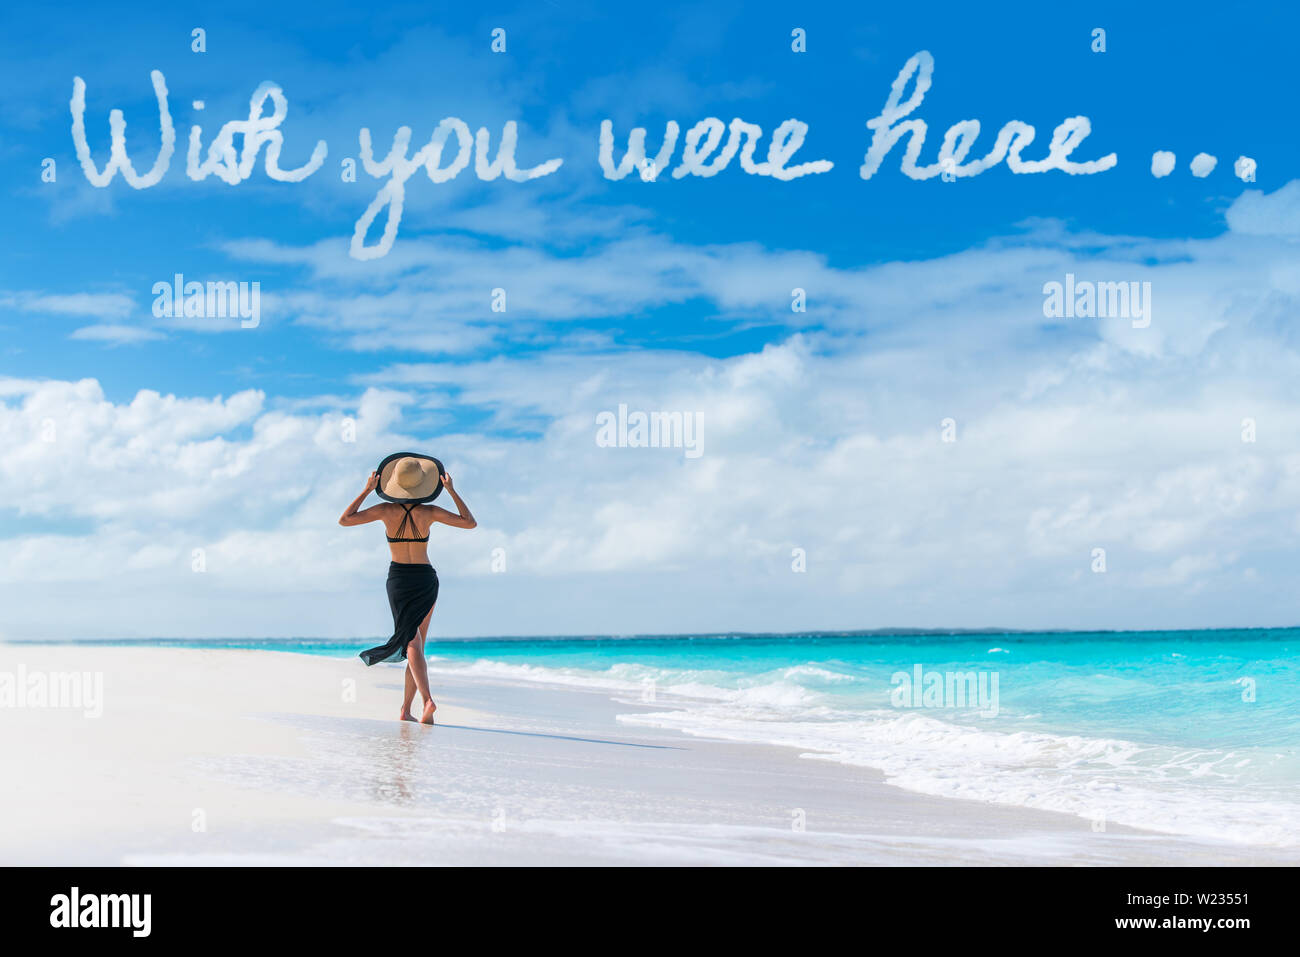 Wish You Were Here cloud message écrit dans le ciel au-dessus de woman  walking on beach vacation Luxury Travel destination des Caraïbes. Détente  Tourisme sur des vacances à resort. Proverbe populaire carte